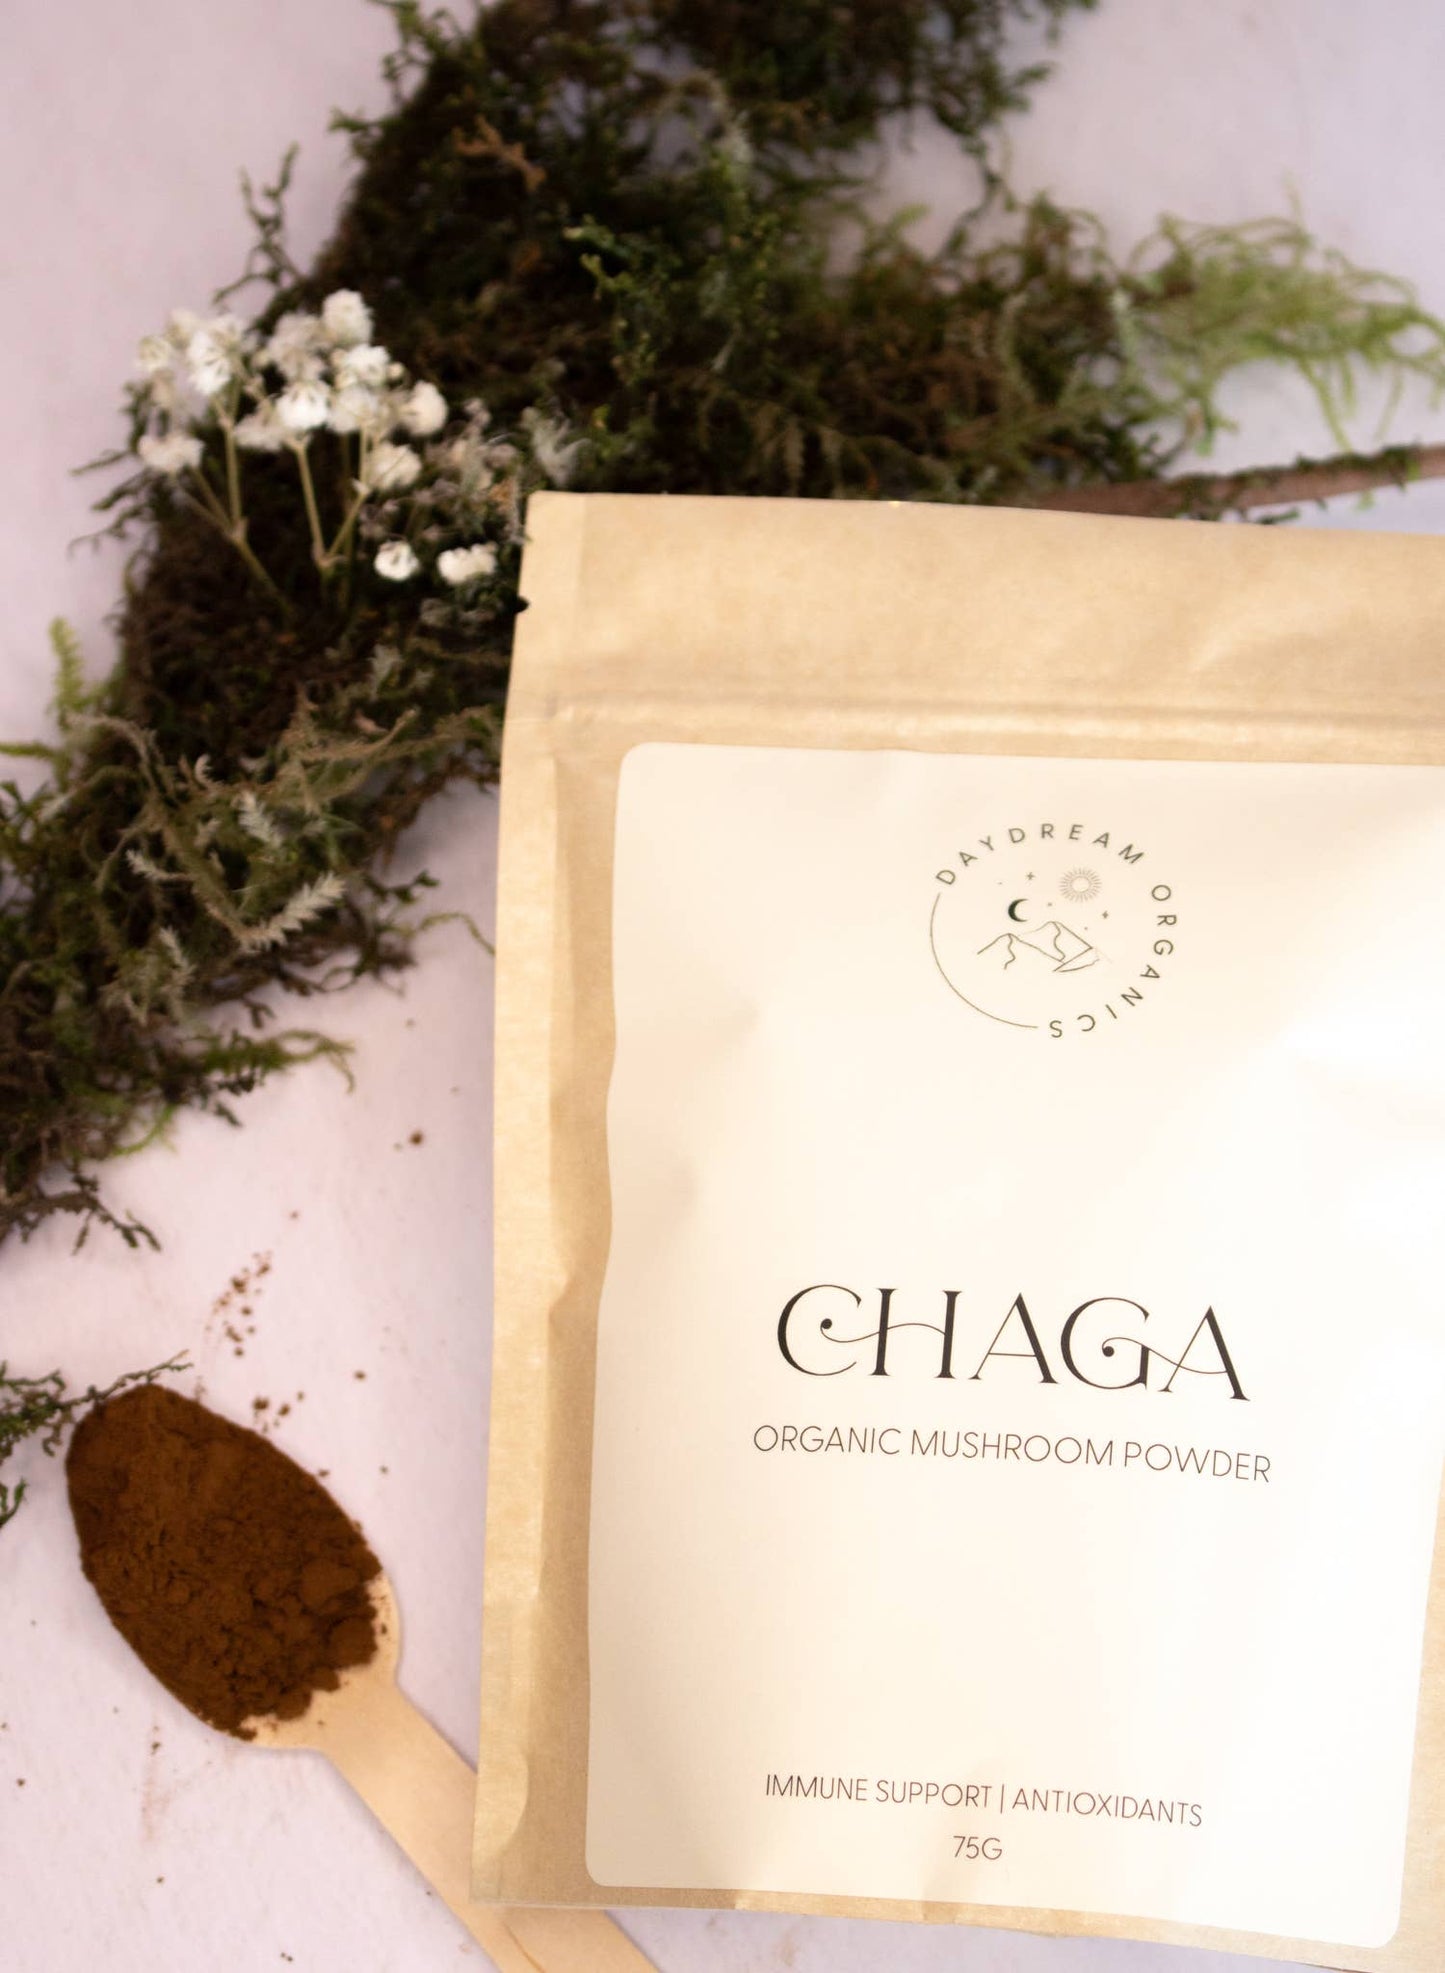 Daydream Organics: Chaga Mushroom Powder